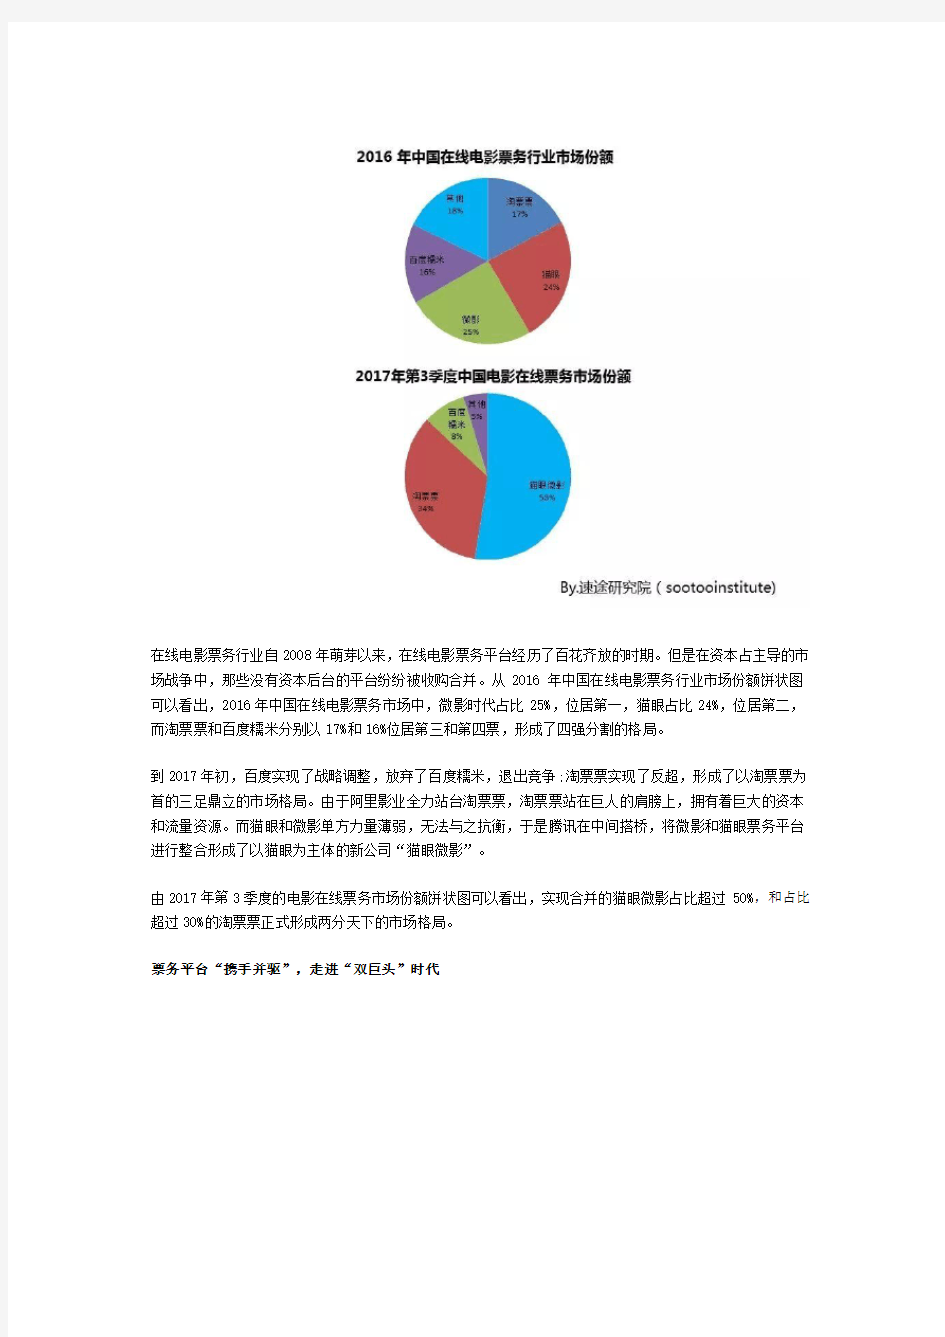 速途研究院：2017年中国在线电影票务市场分析报告